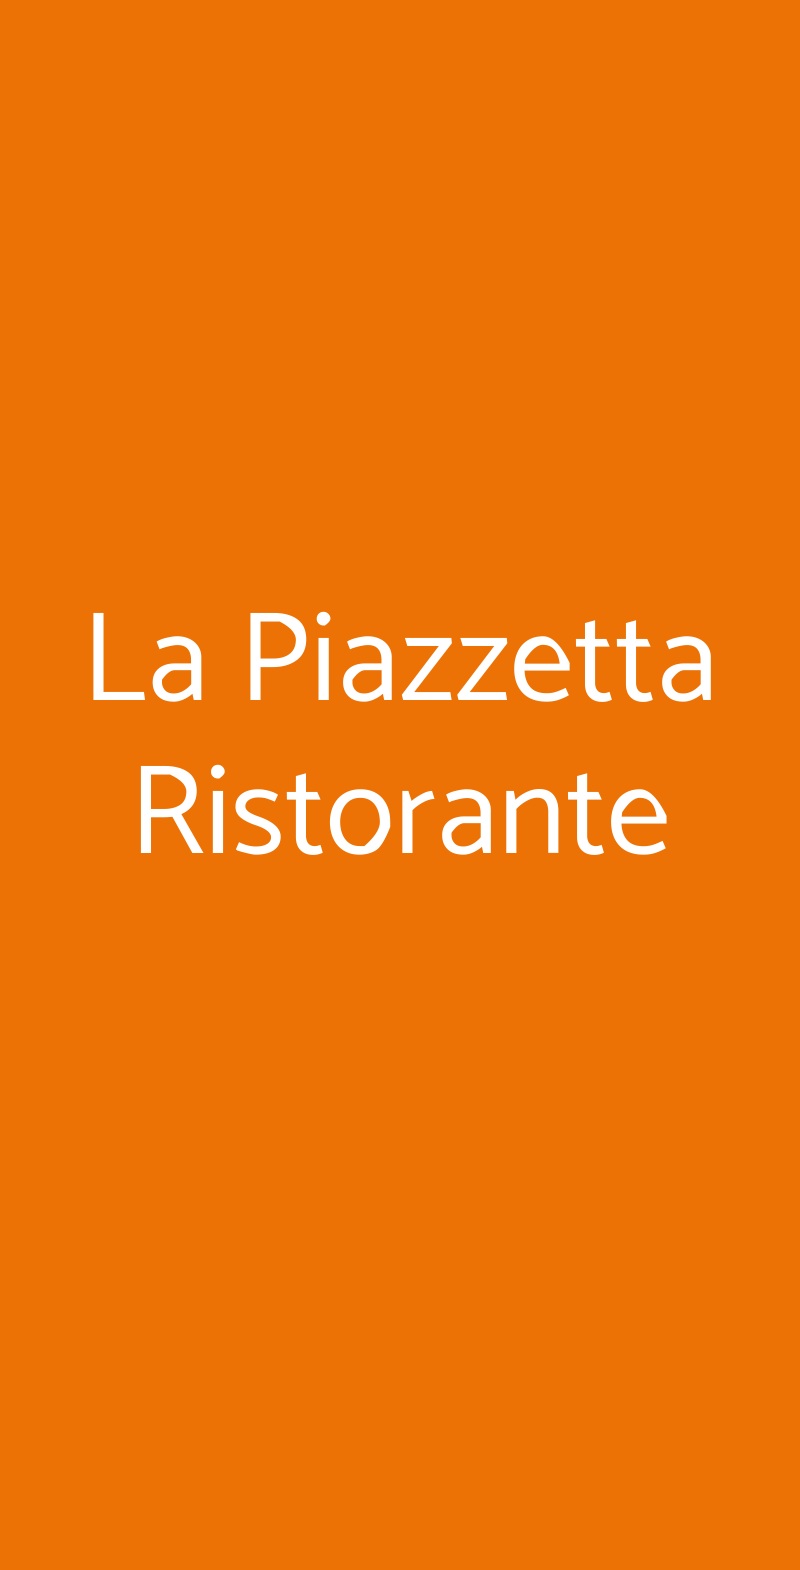 La Piazzetta Ristorante Bologna menù 1 pagina